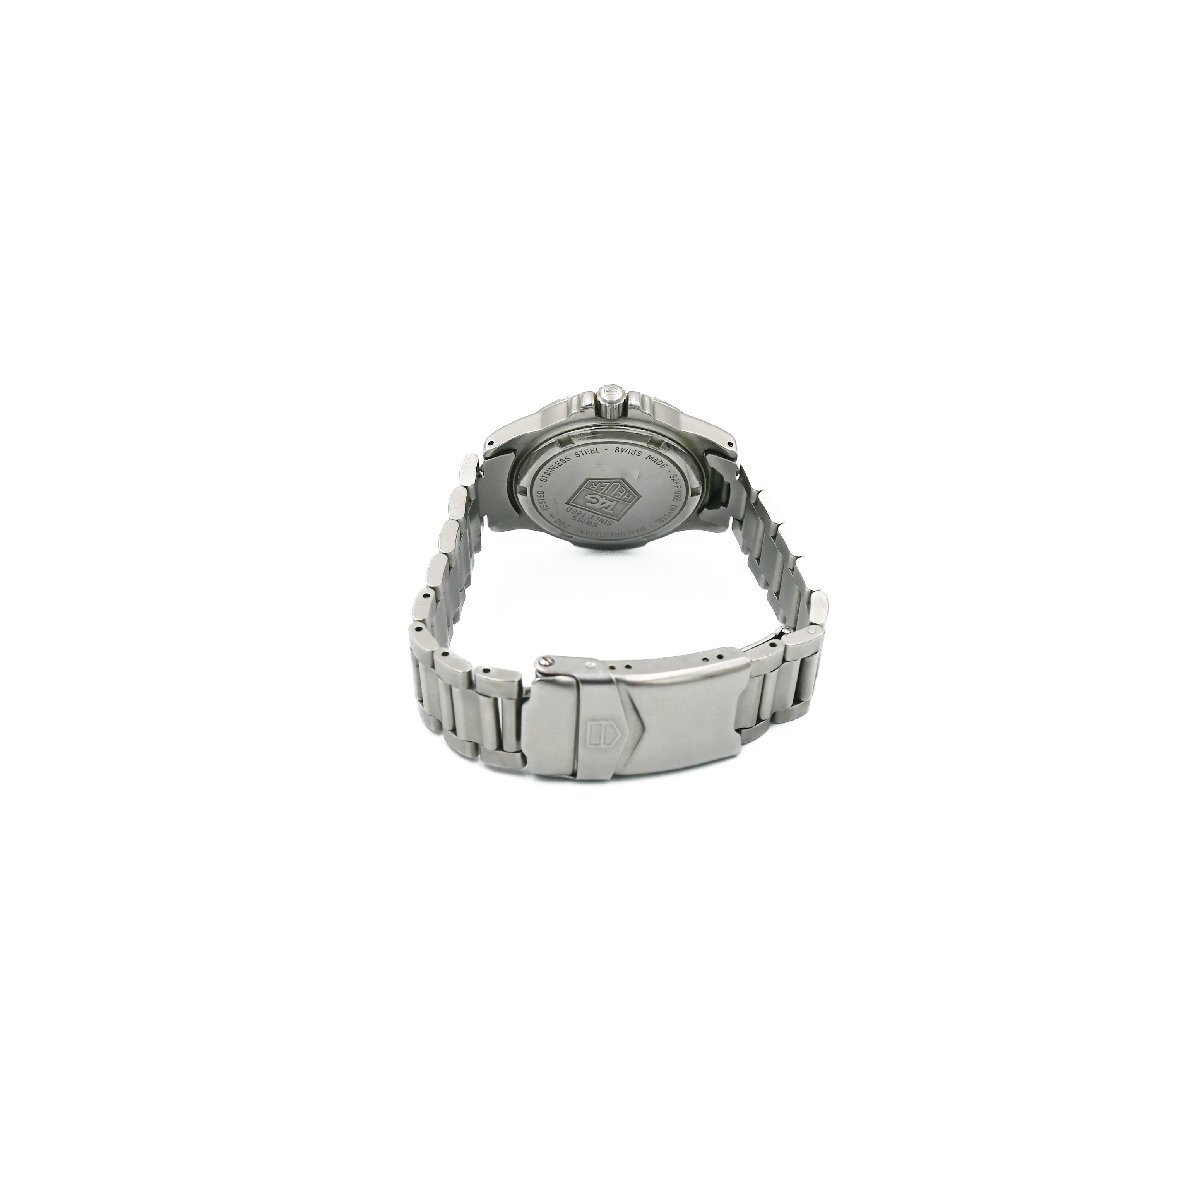 1円 稼働 良品 TAG HEUER タグホイヤー WF1210-K0 200M Professional プロフェッショナル クオーツ デイト 3針 グレー文字盤 腕時計 180202